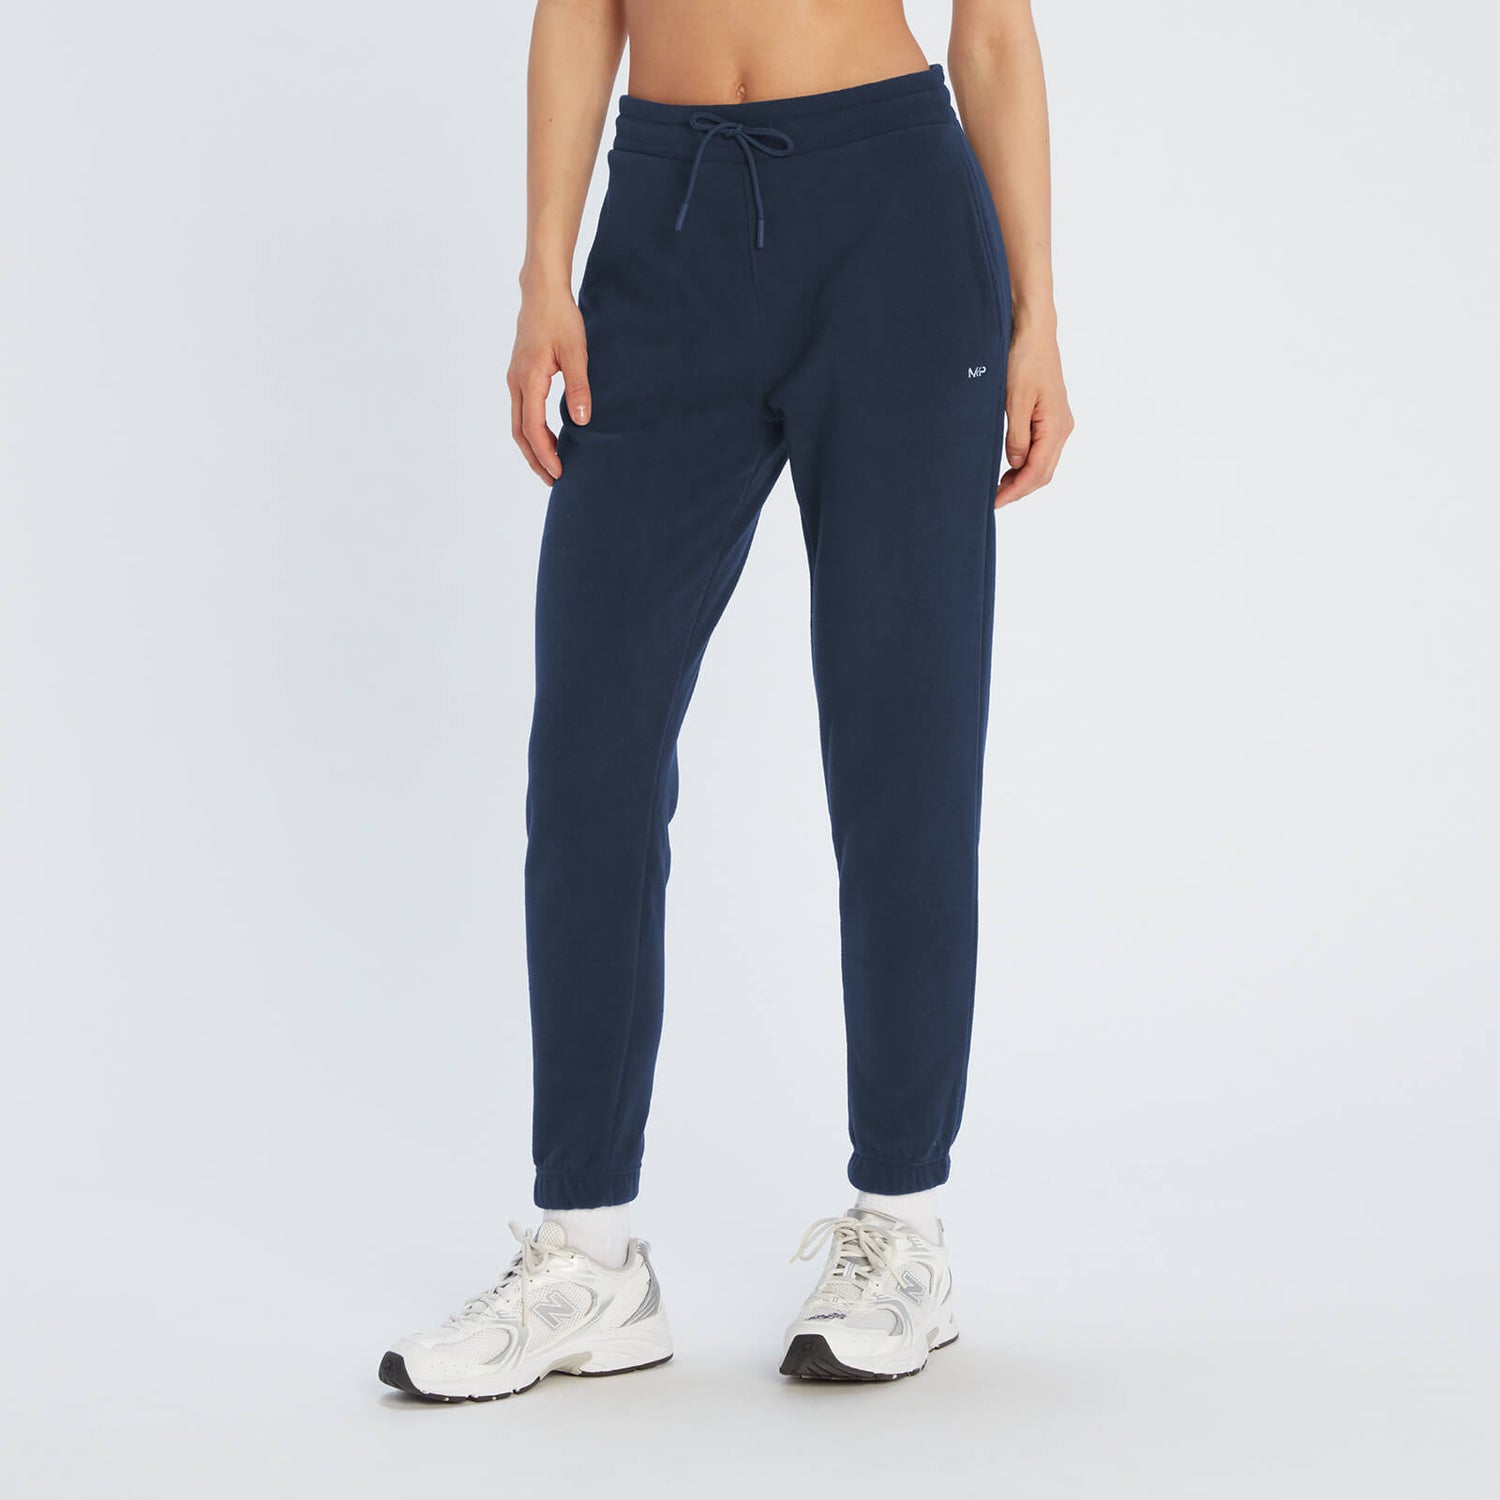 Pantaloni da jogging in pile MP Essentials da donna - Blu navy - XS